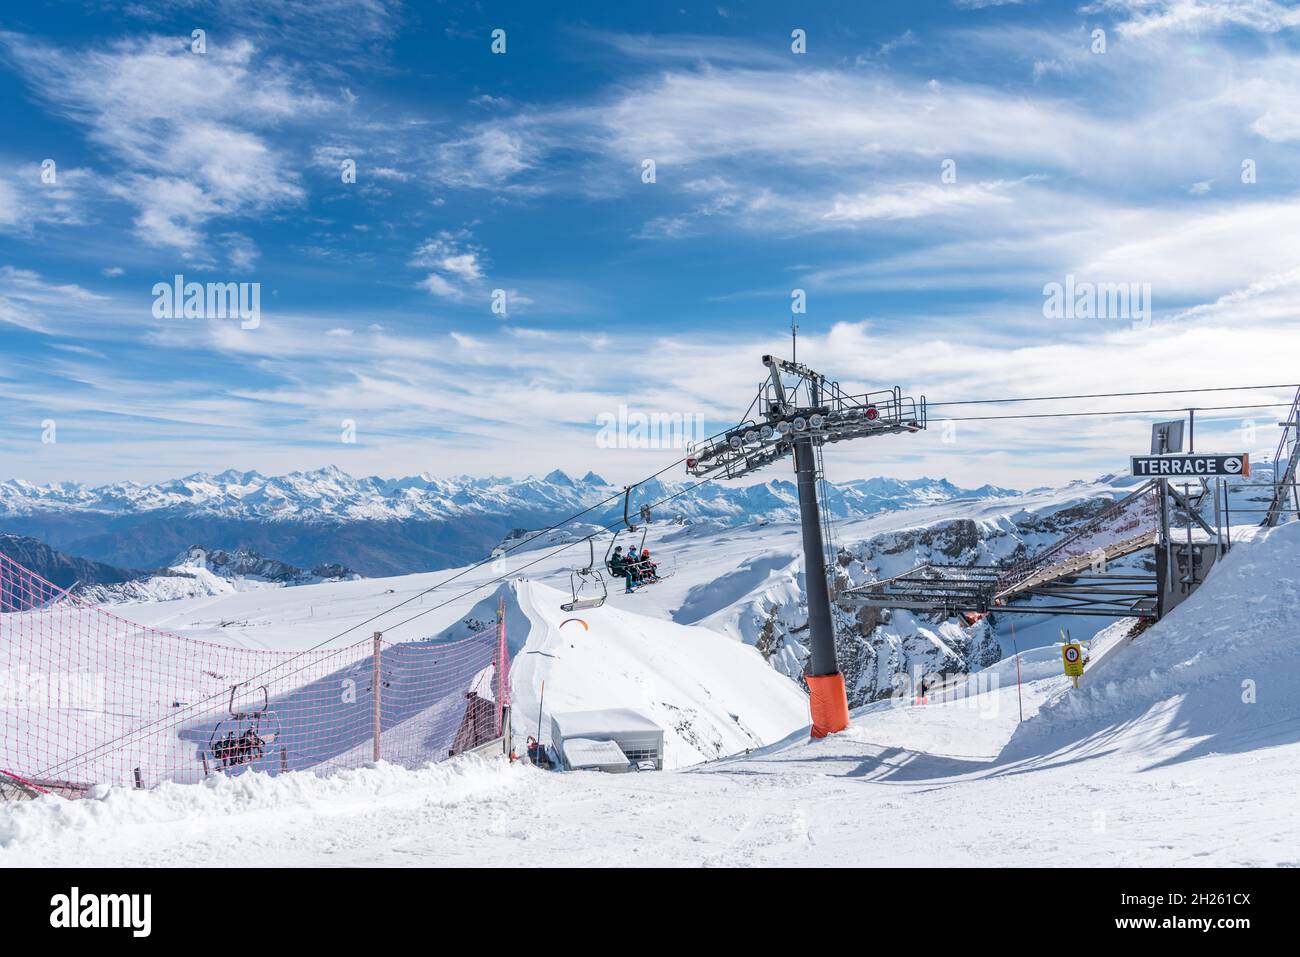 Glacier 3000, Les Diablerets, Schweiz-31. Oktober 2020: Blick auf die Sessellifte und die Struktur, durch die sie verläuft. Stockfoto